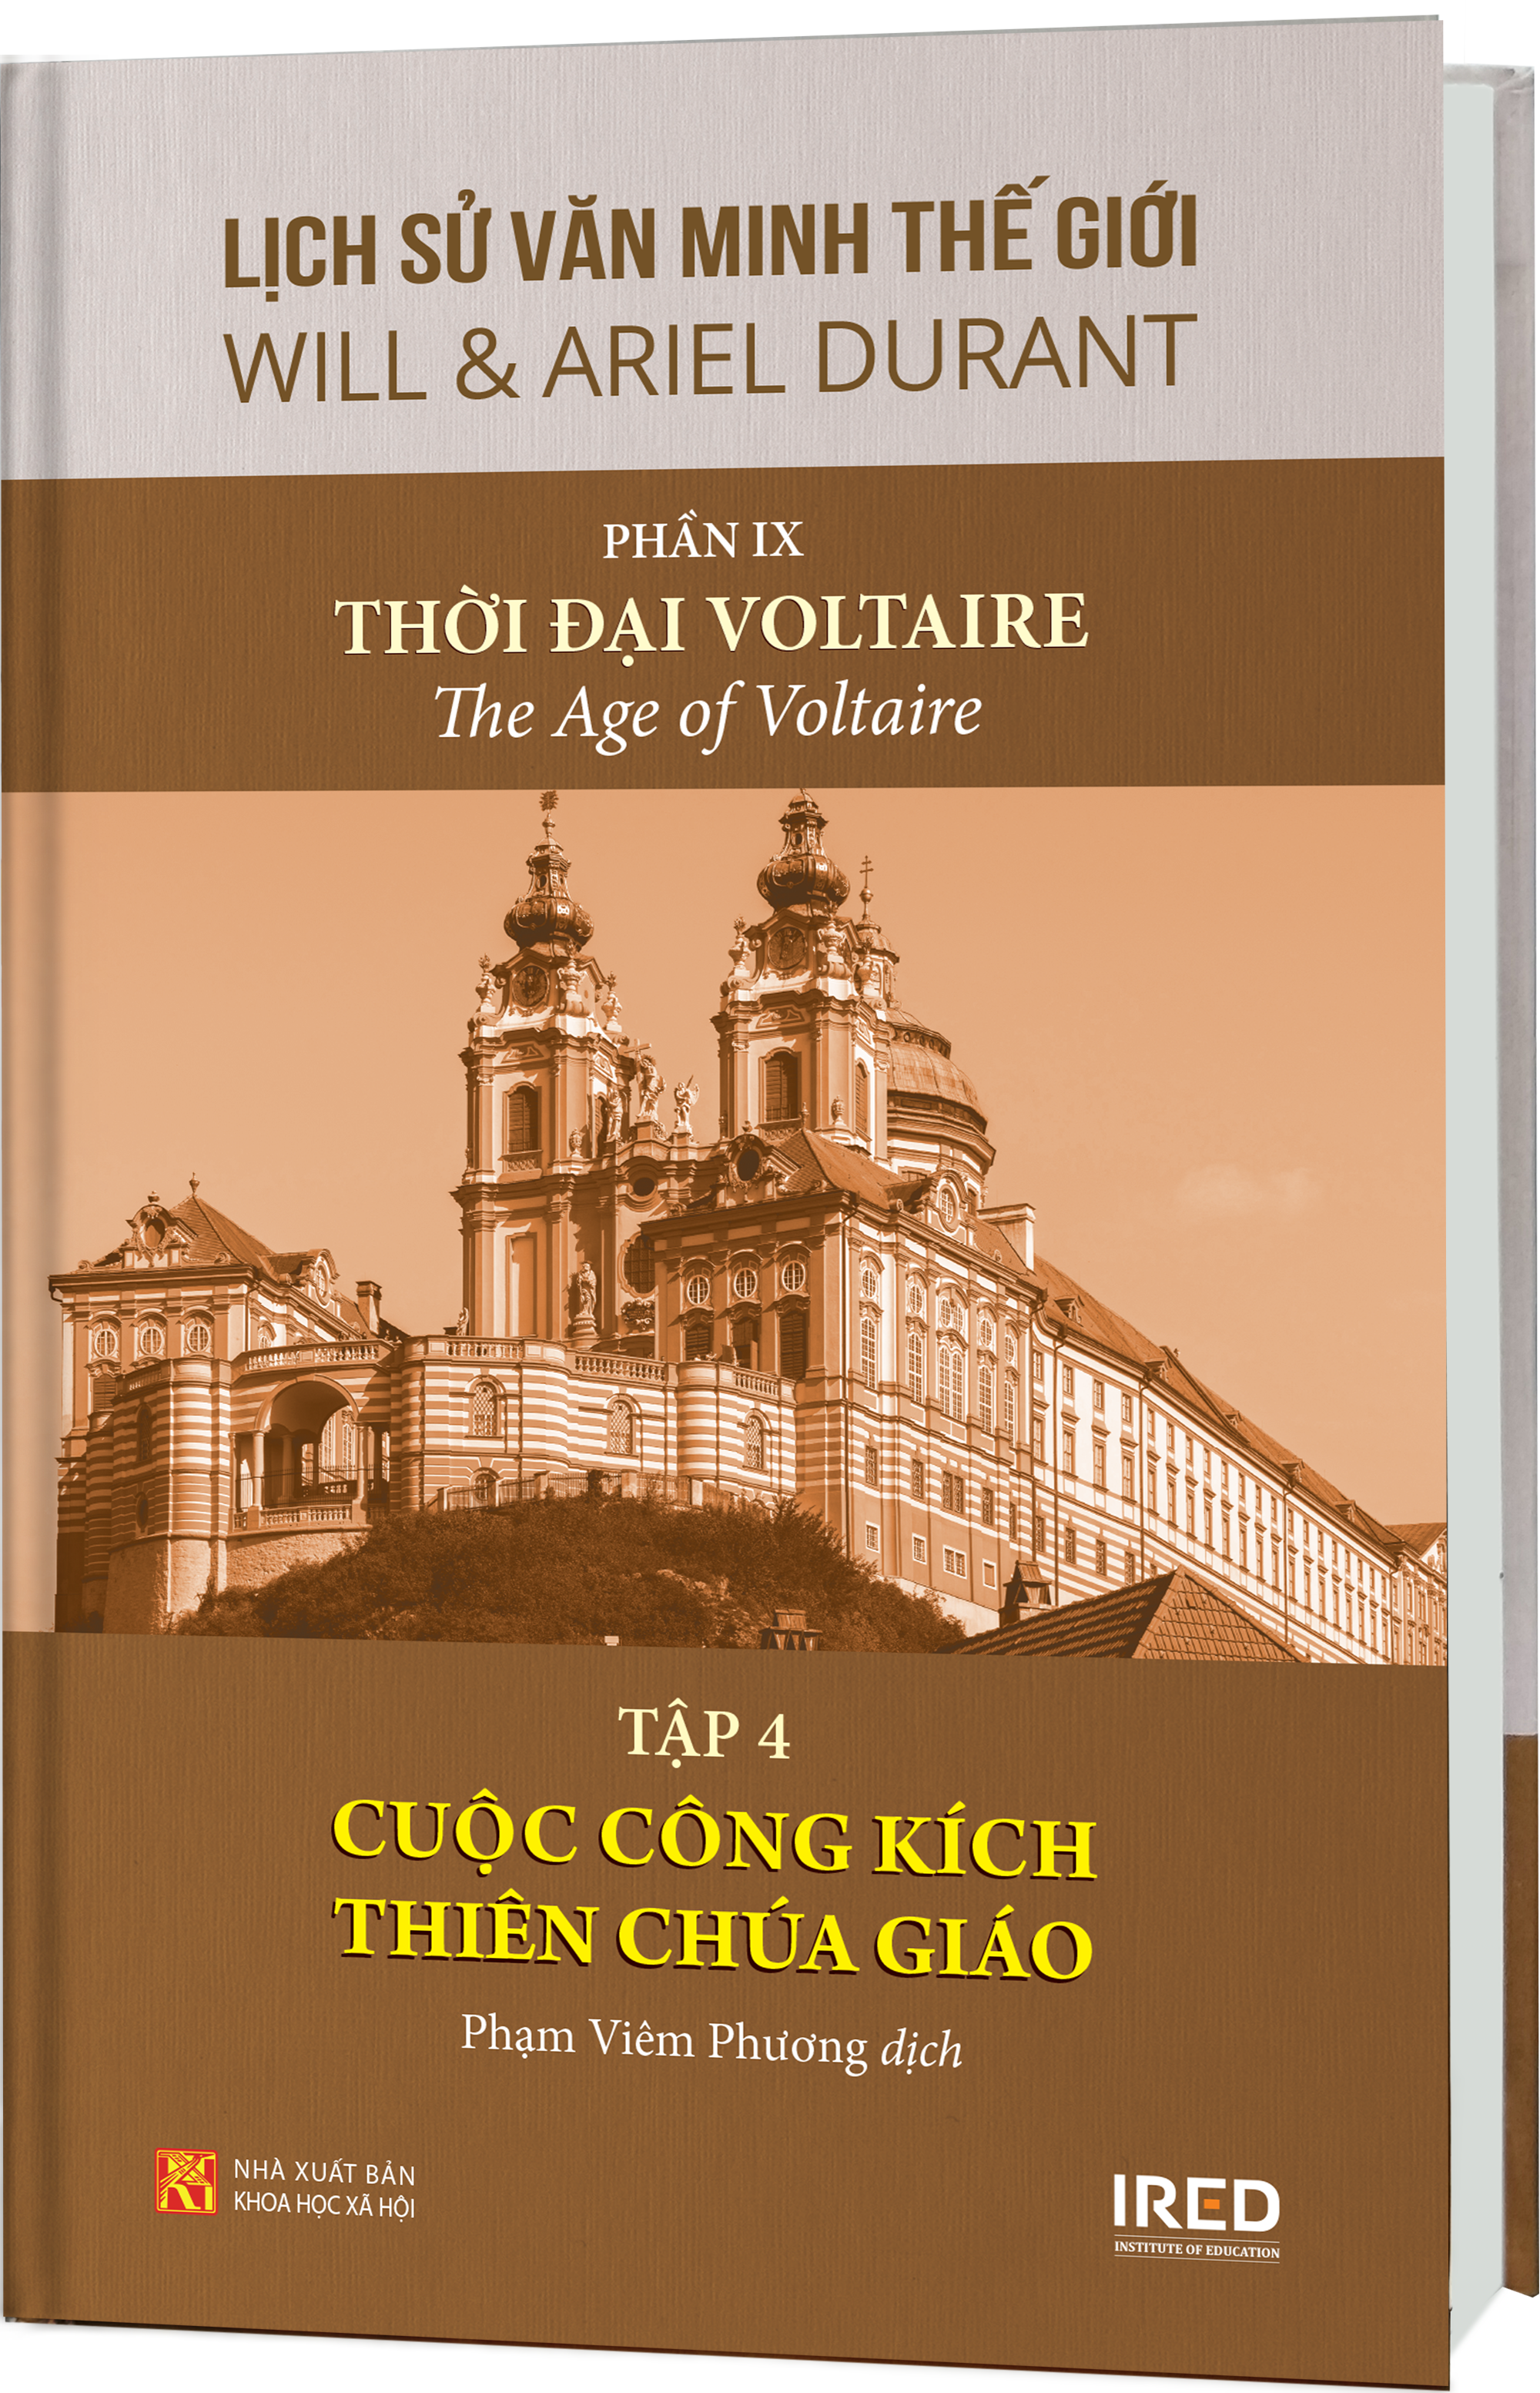 Sách IRED Books - Lịch sử văn minh thế giới phần 9 : Thời đại Voltaire - tập 4: Cuộc công kích Thiên Chúa giáo - Will Durant